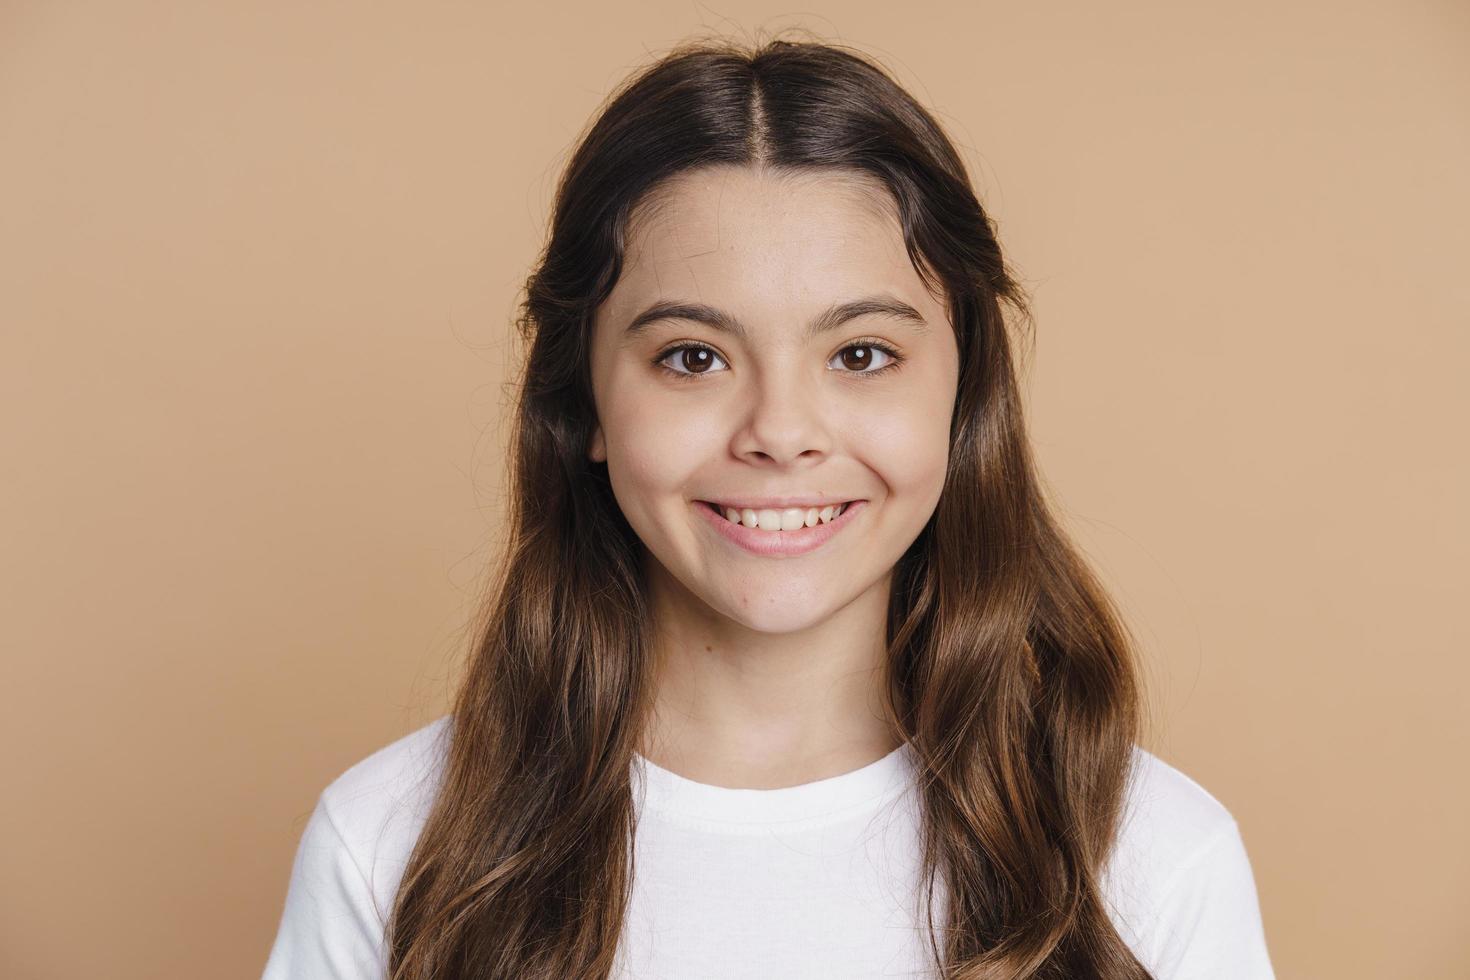 lächelndes, positives Teenager-Mädchen, das auf einem braunen Hintergrund posiert foto